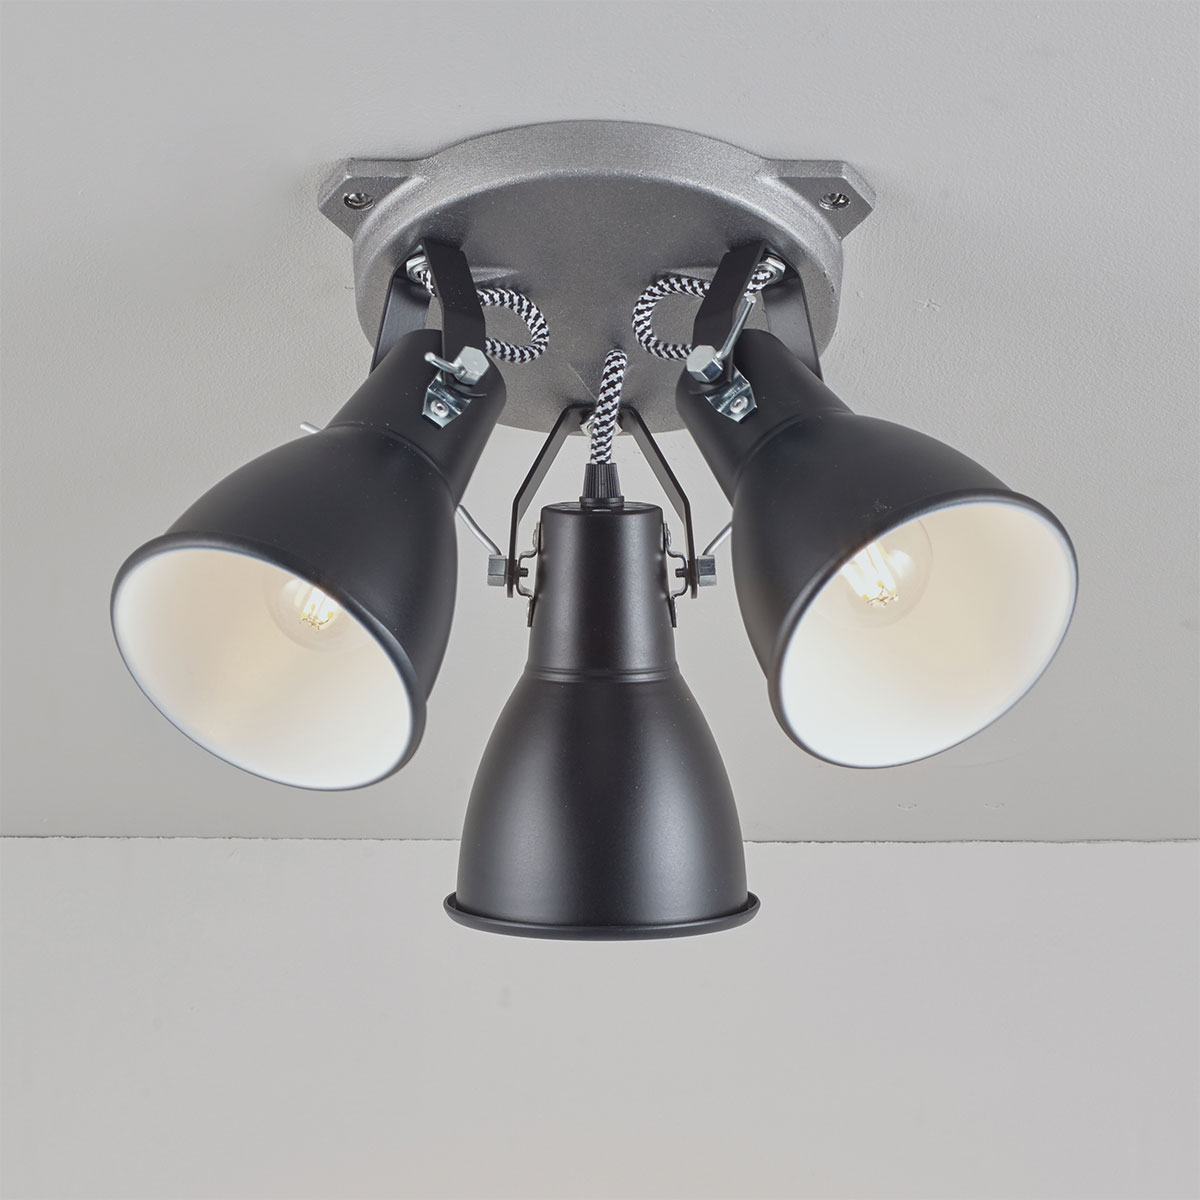 Dreifach-Deckenstrahler im Industrial-Look STIRRUP: Dreifach-Deckenleuchte im Scheinwerfer-Stil: Stirrup Triple Ceiling Light, hier in schwarz